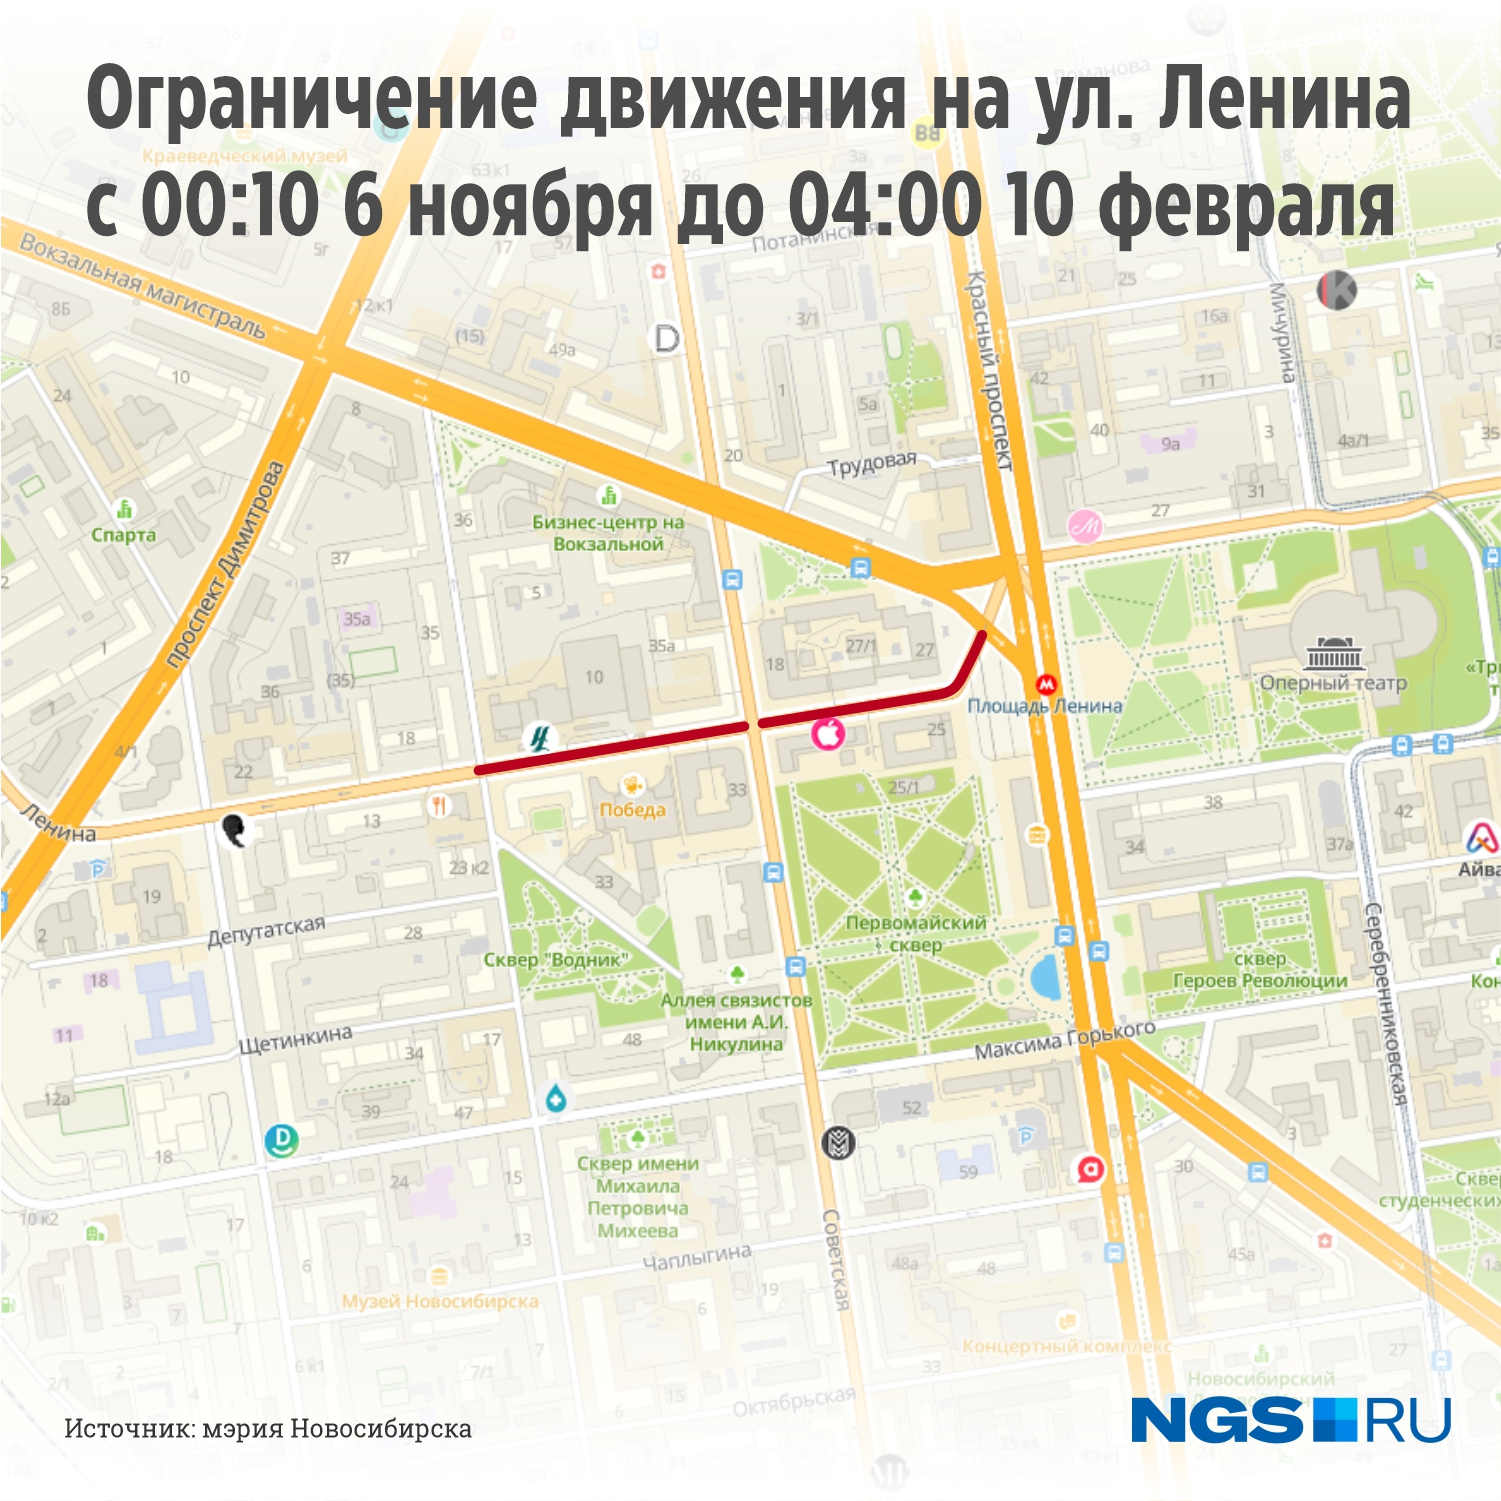 Временное прекращение движения транспорта по улице Ленина